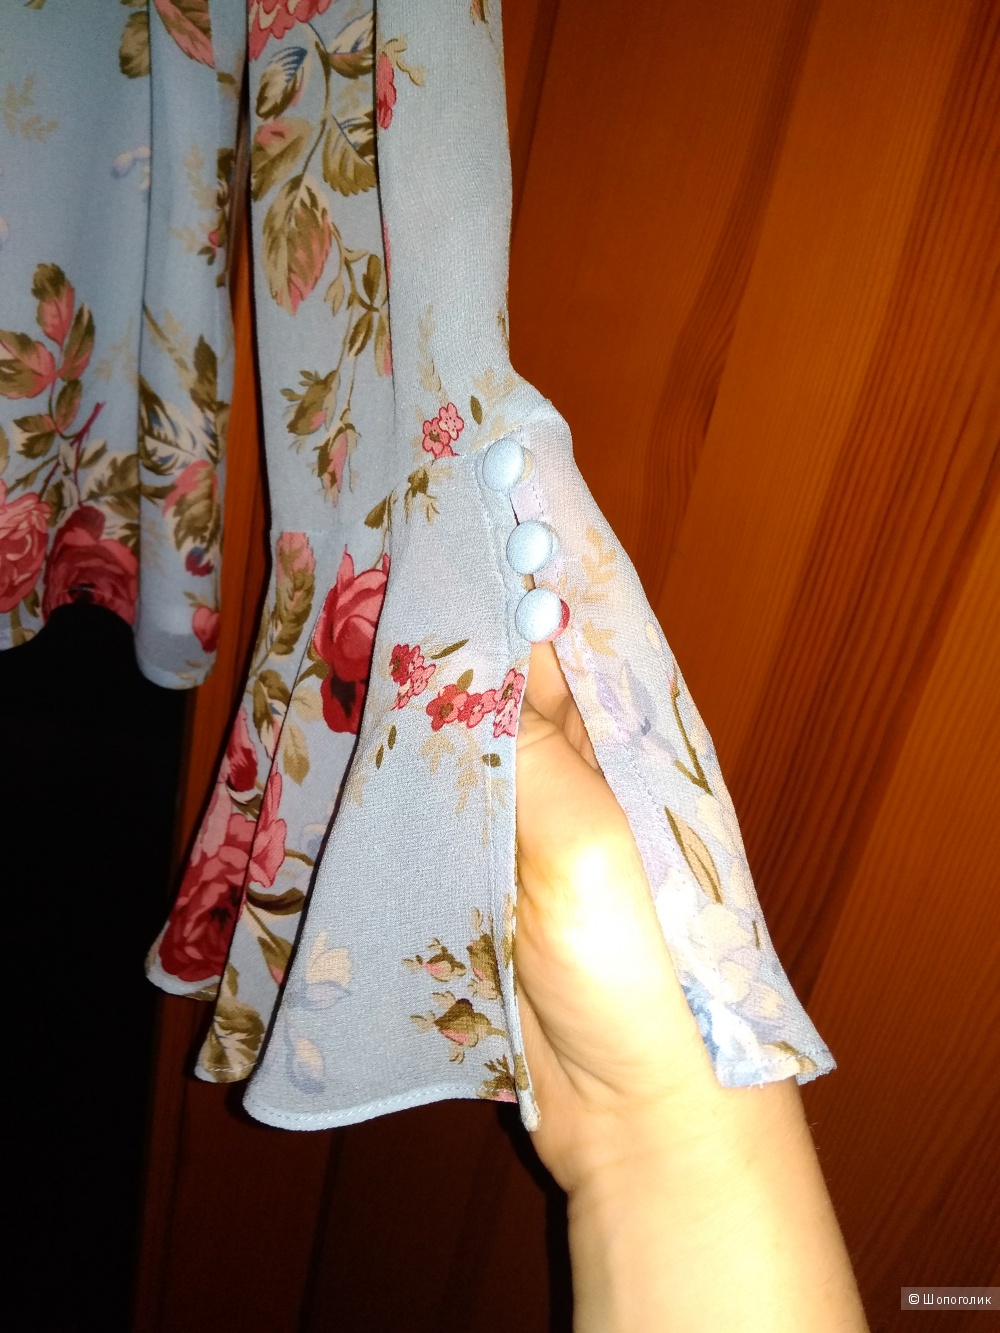 Шелковая блуза laura ashley  размер euro 44 /50-52 рос.